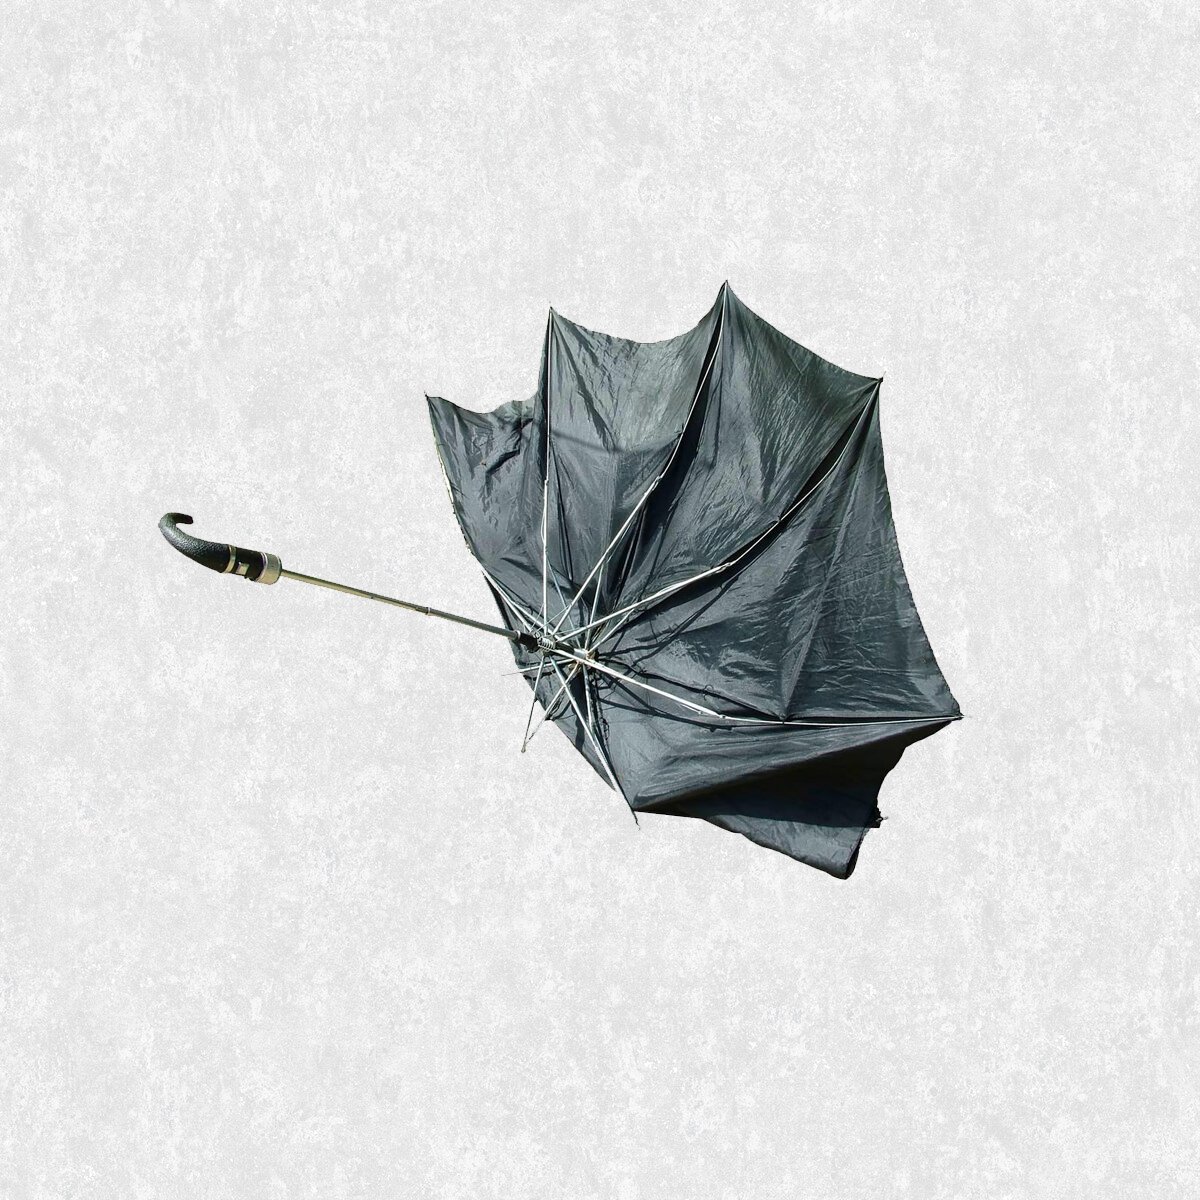 Любимый зонтик. Зонт Black Swan 3x3. Сломанный зонтик. Старый зонт. Сломался зонт.